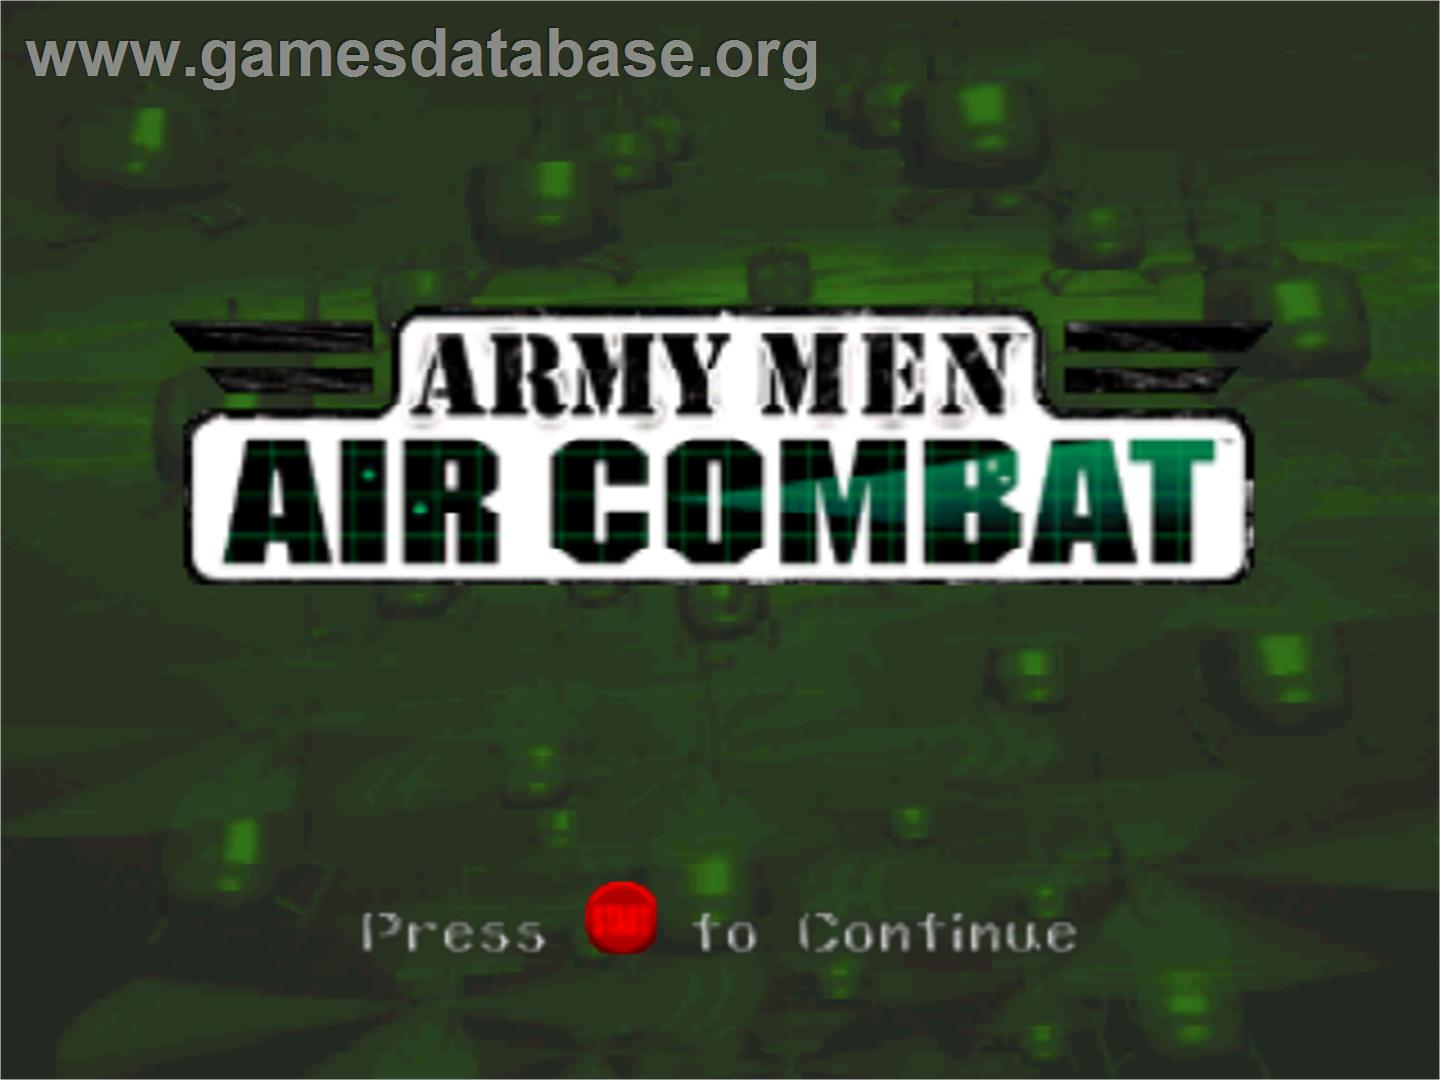 Army Men: Air Combat - Nintendo N64 - Artwork - Title Screen